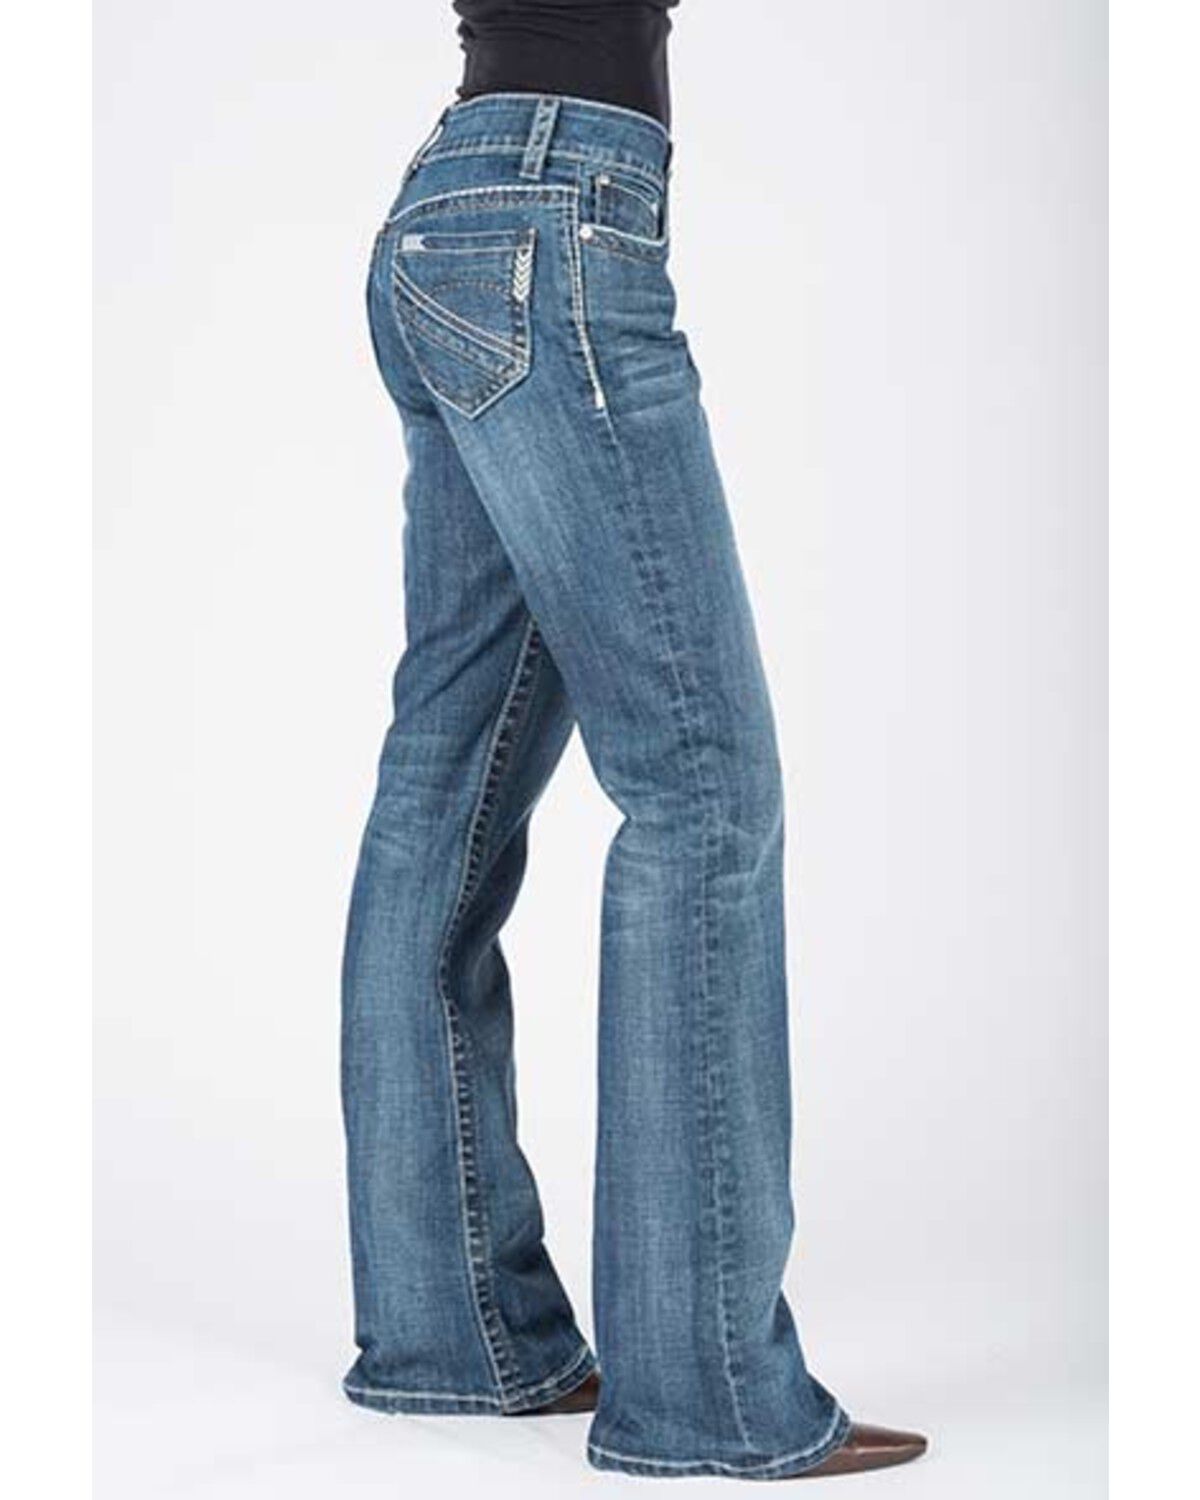 stetson city trouser jeans